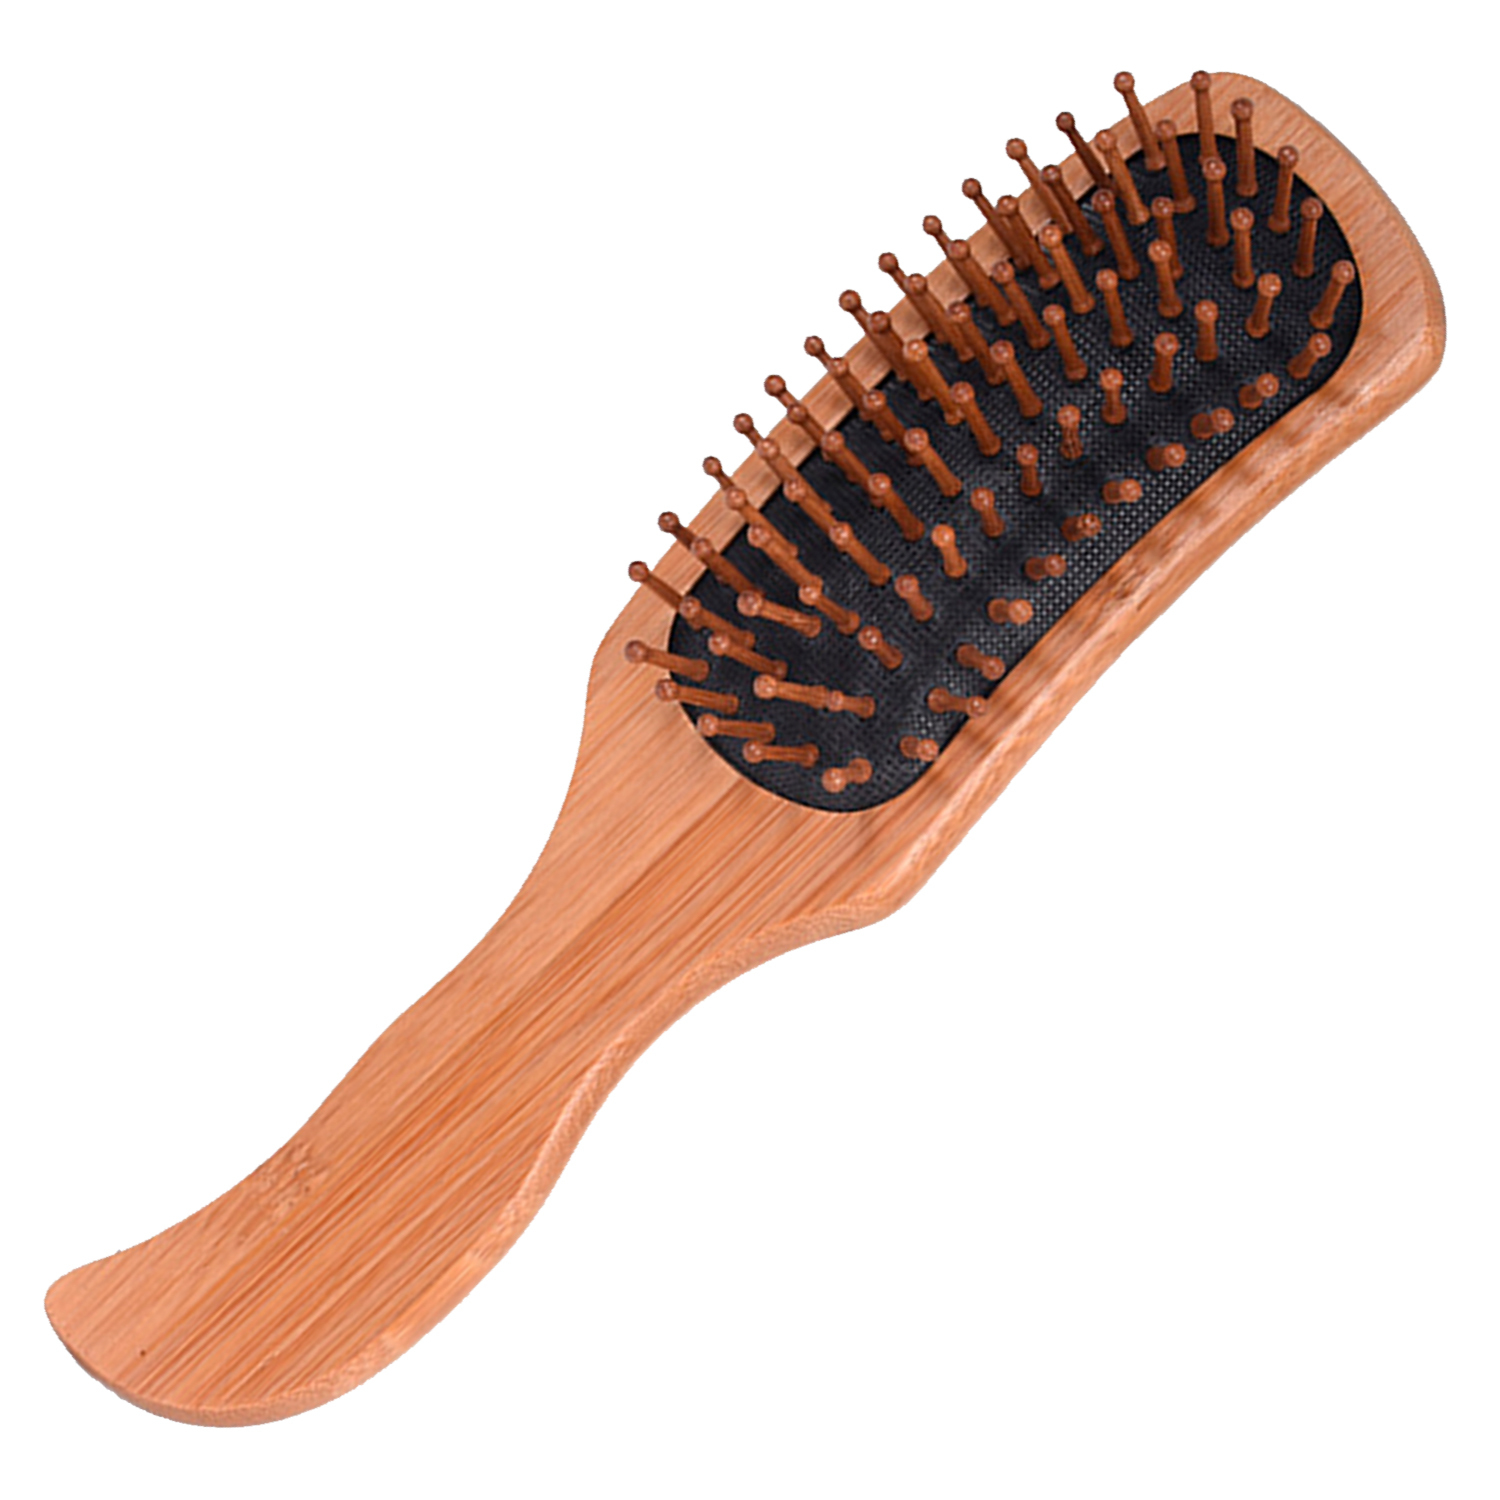 Массажная щетка для волос VenusShape расческа из натурального дерева, 25x8,5 см подставка для чернильницы непроливайки из натурального дерева берёза